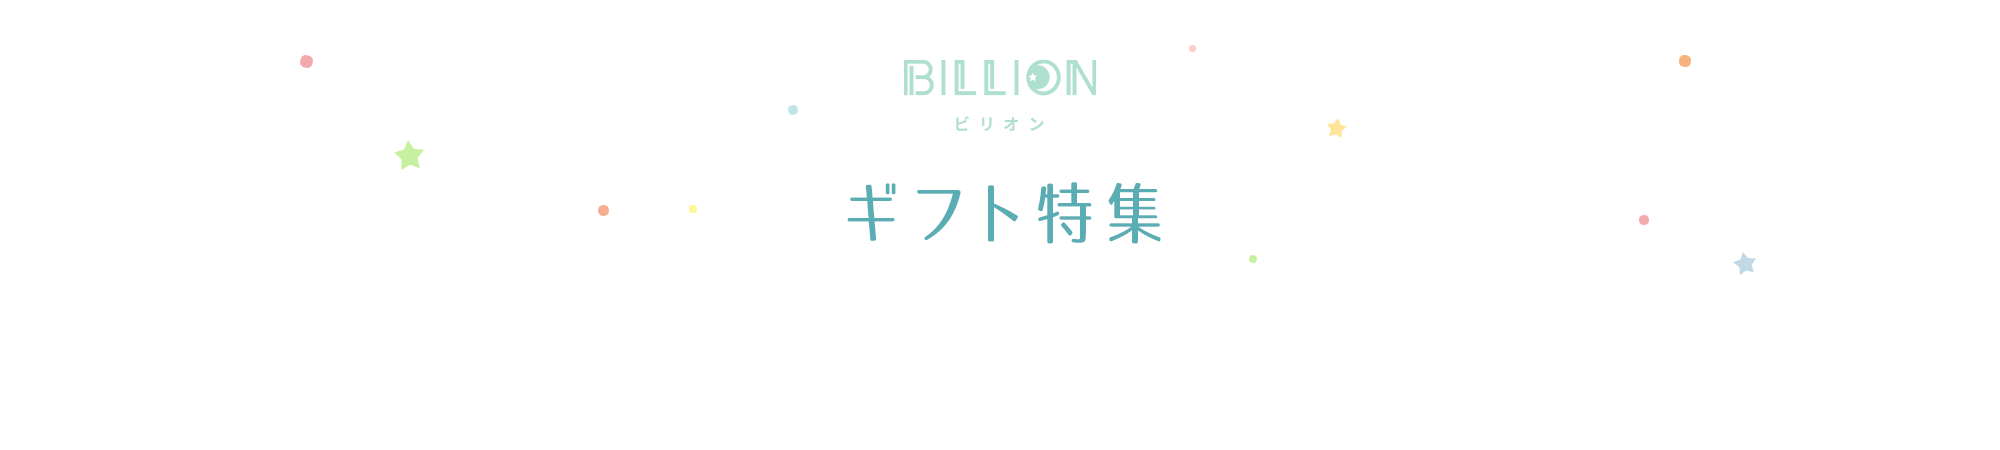 タオル｜寝具｜インテリア ビリオン billion ギフト特集